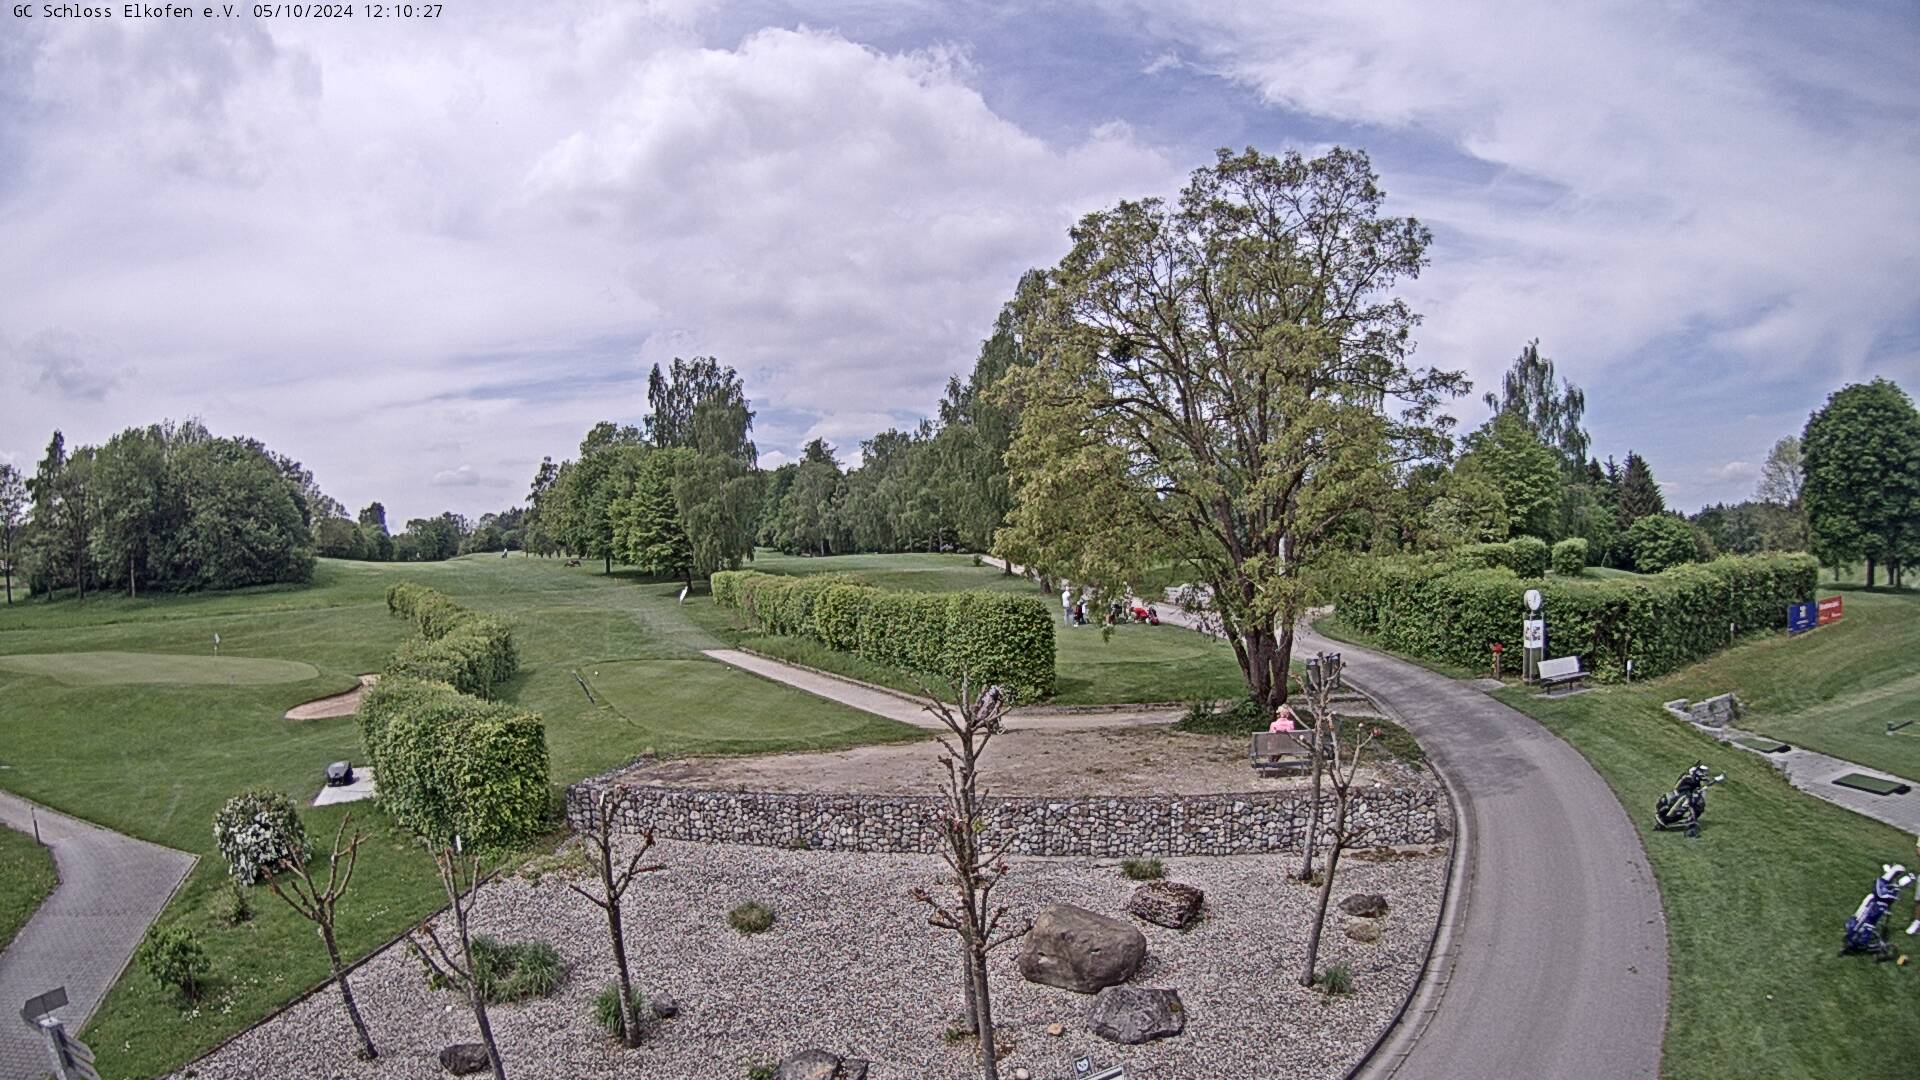 Golfclub Elkofen - Webcam